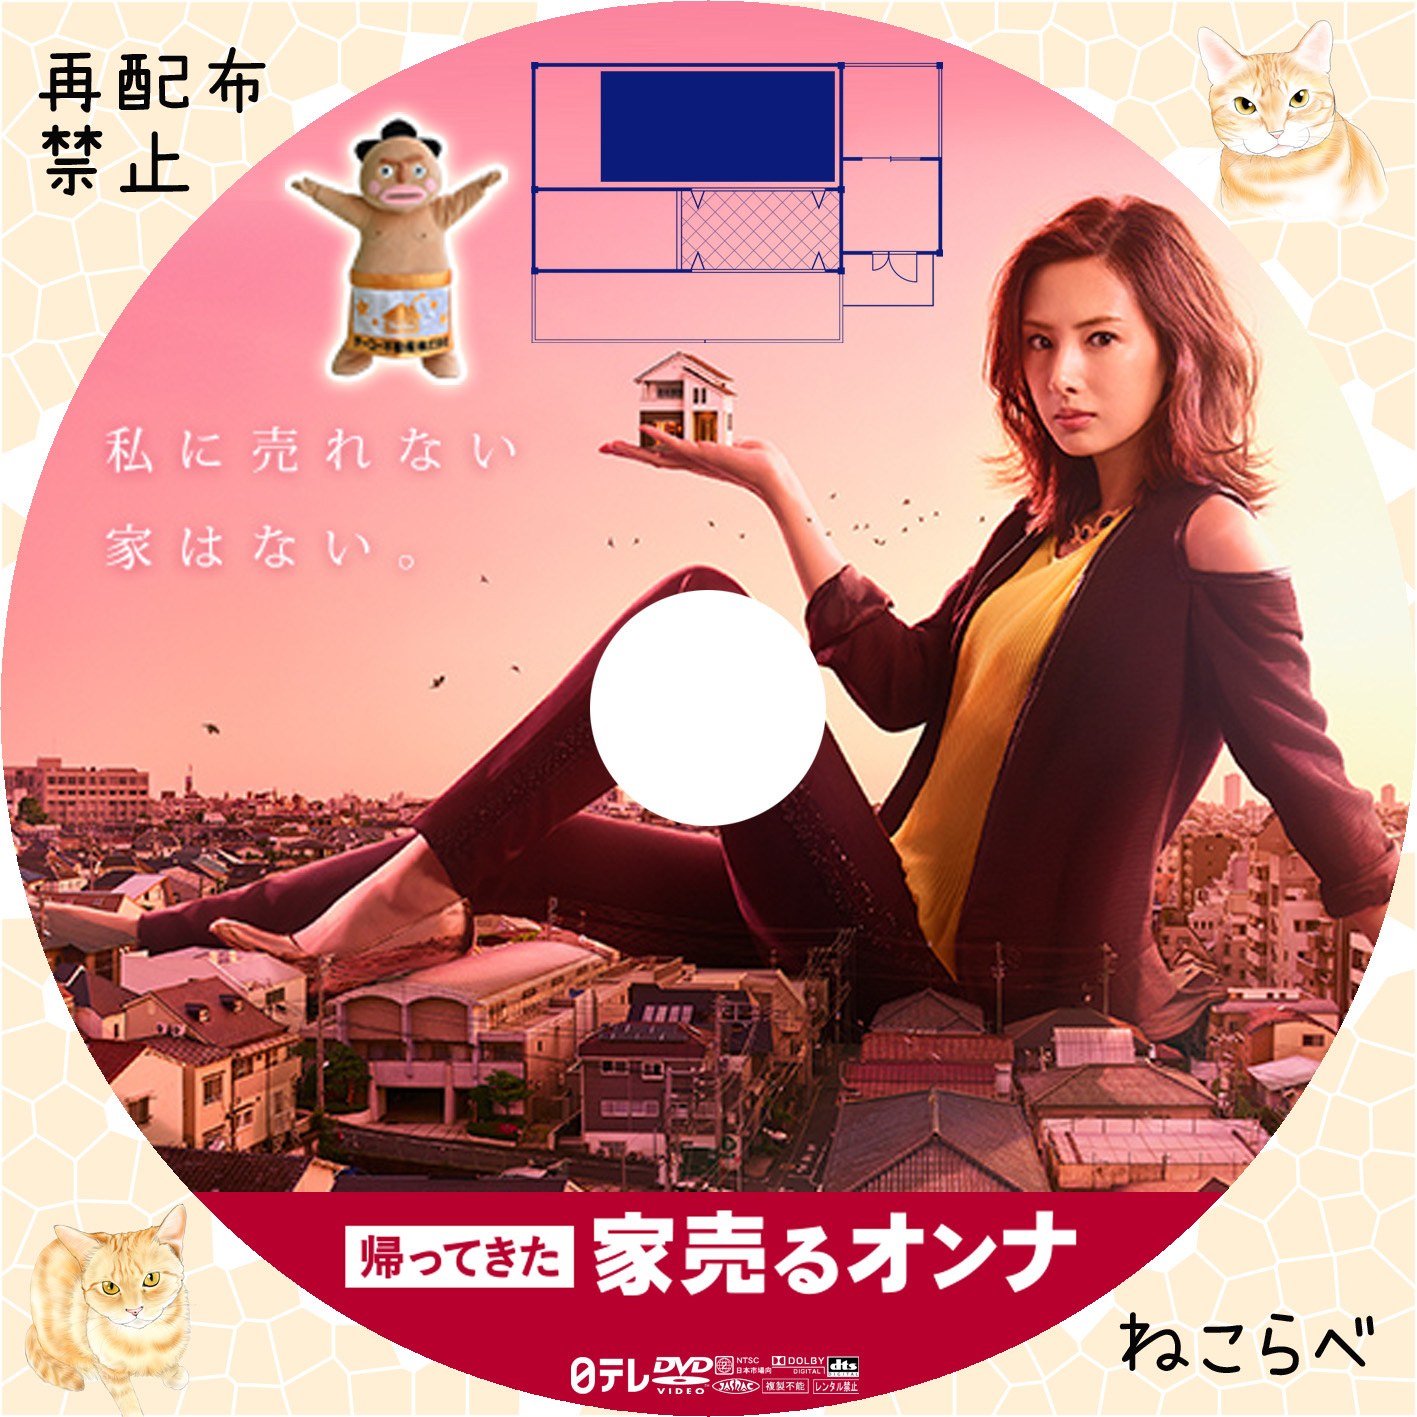 家売るオンナ DVD-BOX〈6枚組〉 www.krzysztofbialy.com